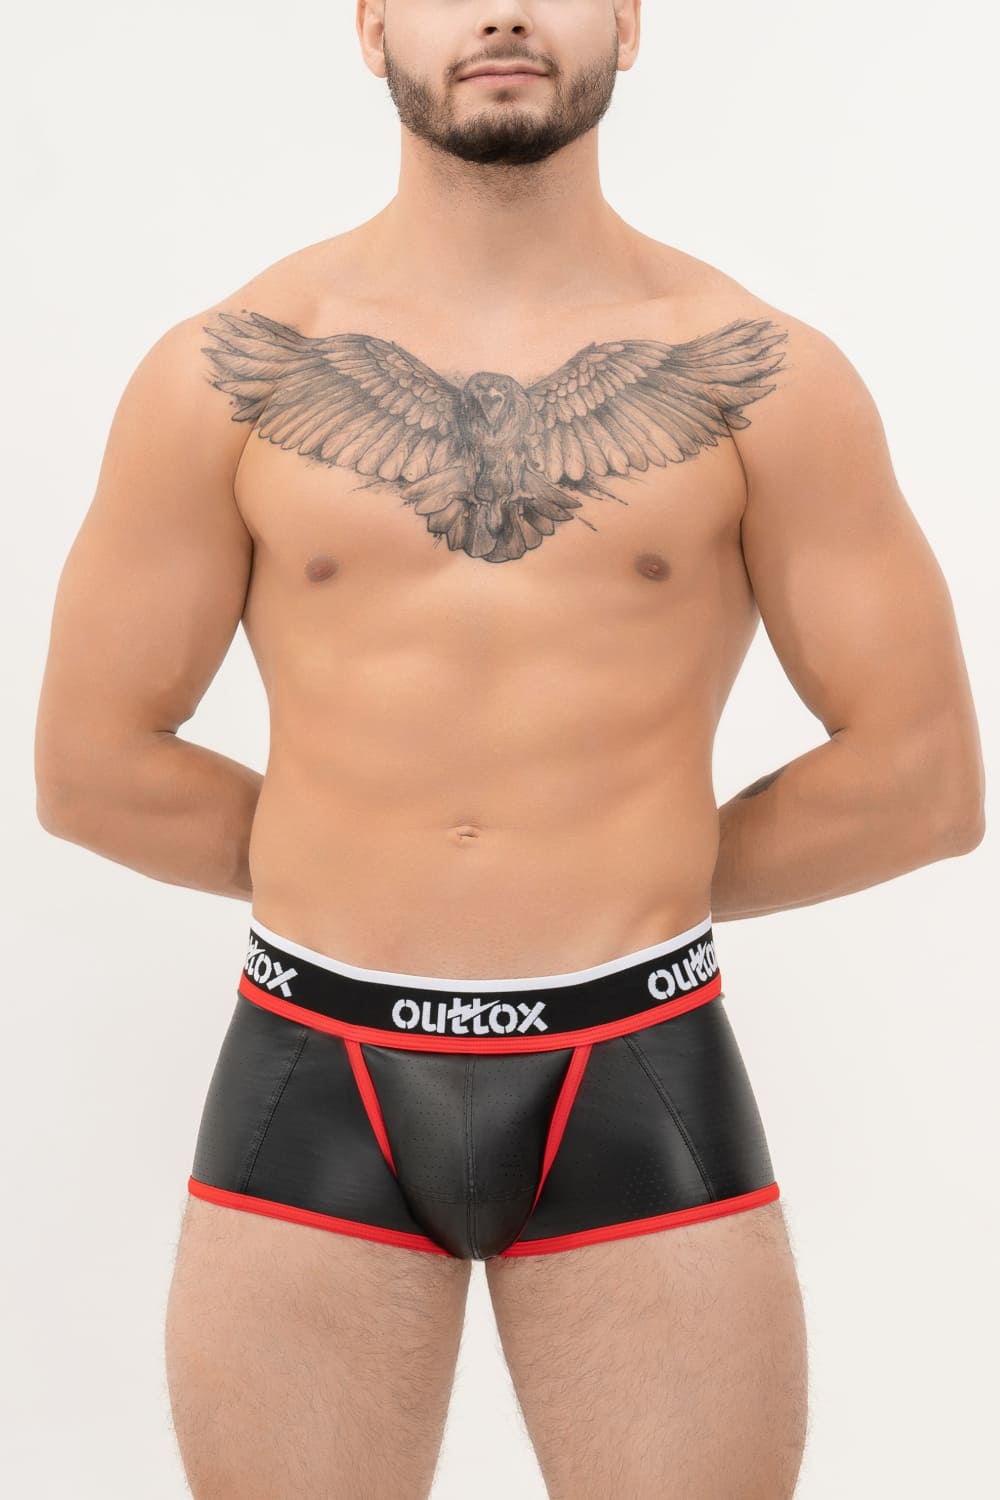 Outtox. Shorts mit offenem Rücken und Druckknopf-Codpiece. Schwarz+Rot